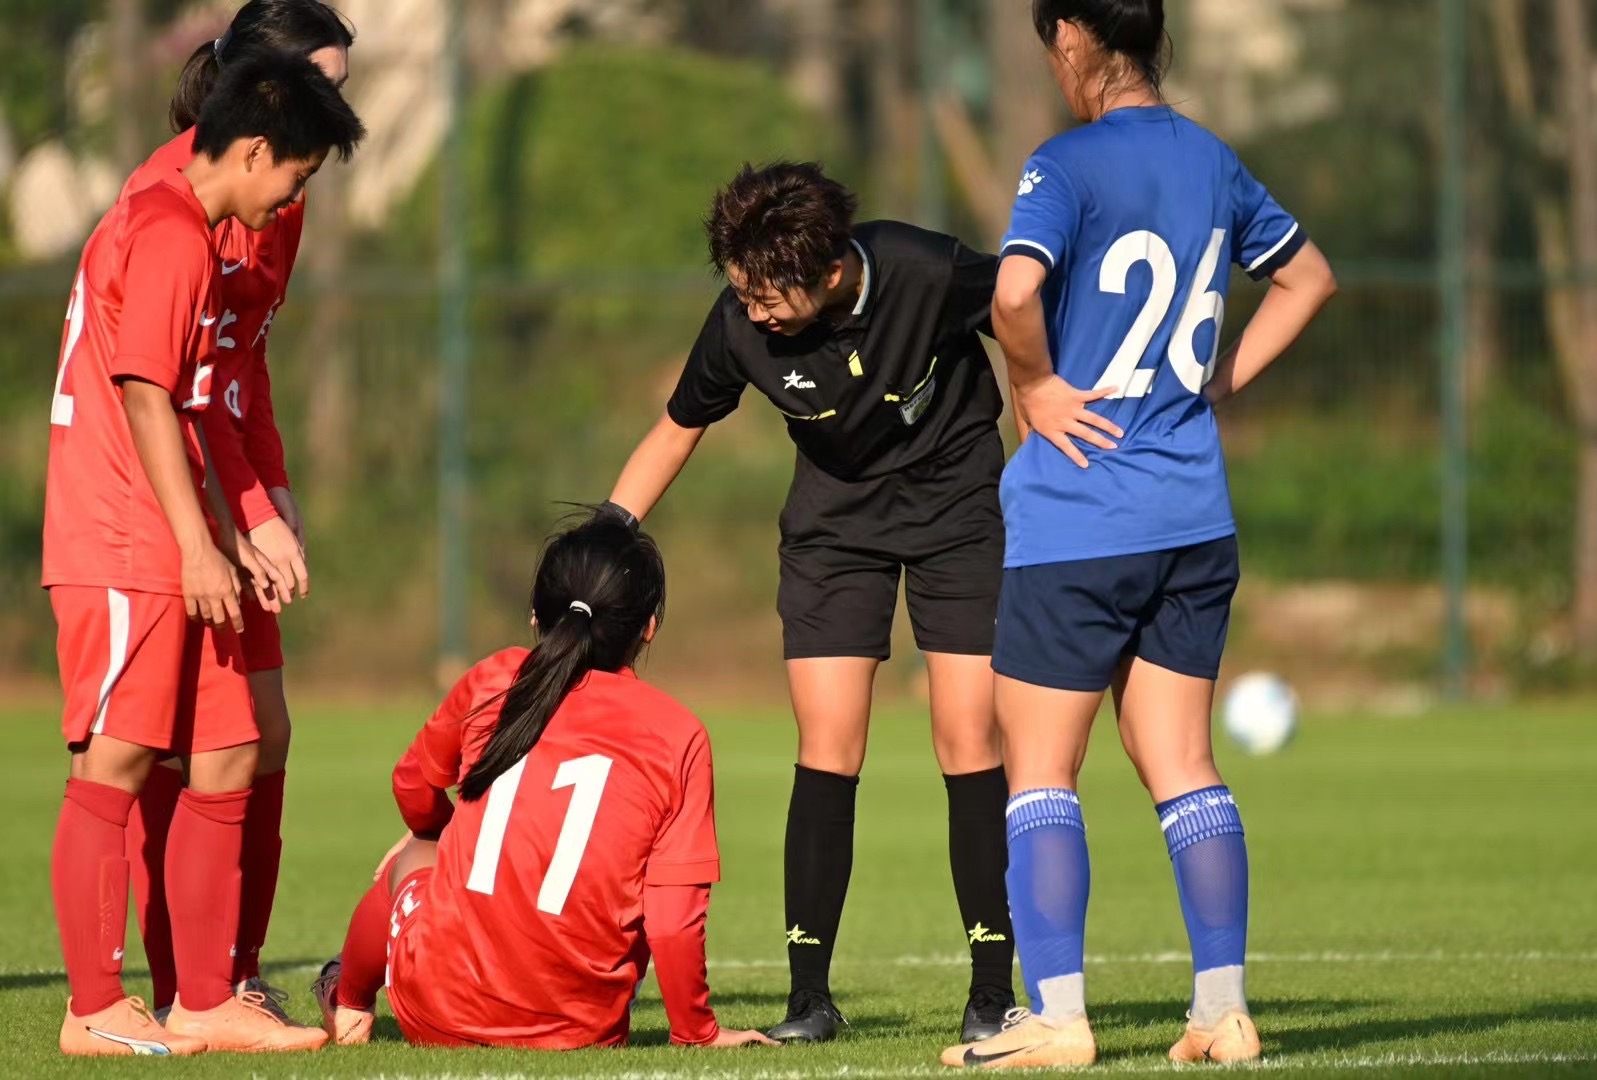 “90后”中国足球女裁判成长史